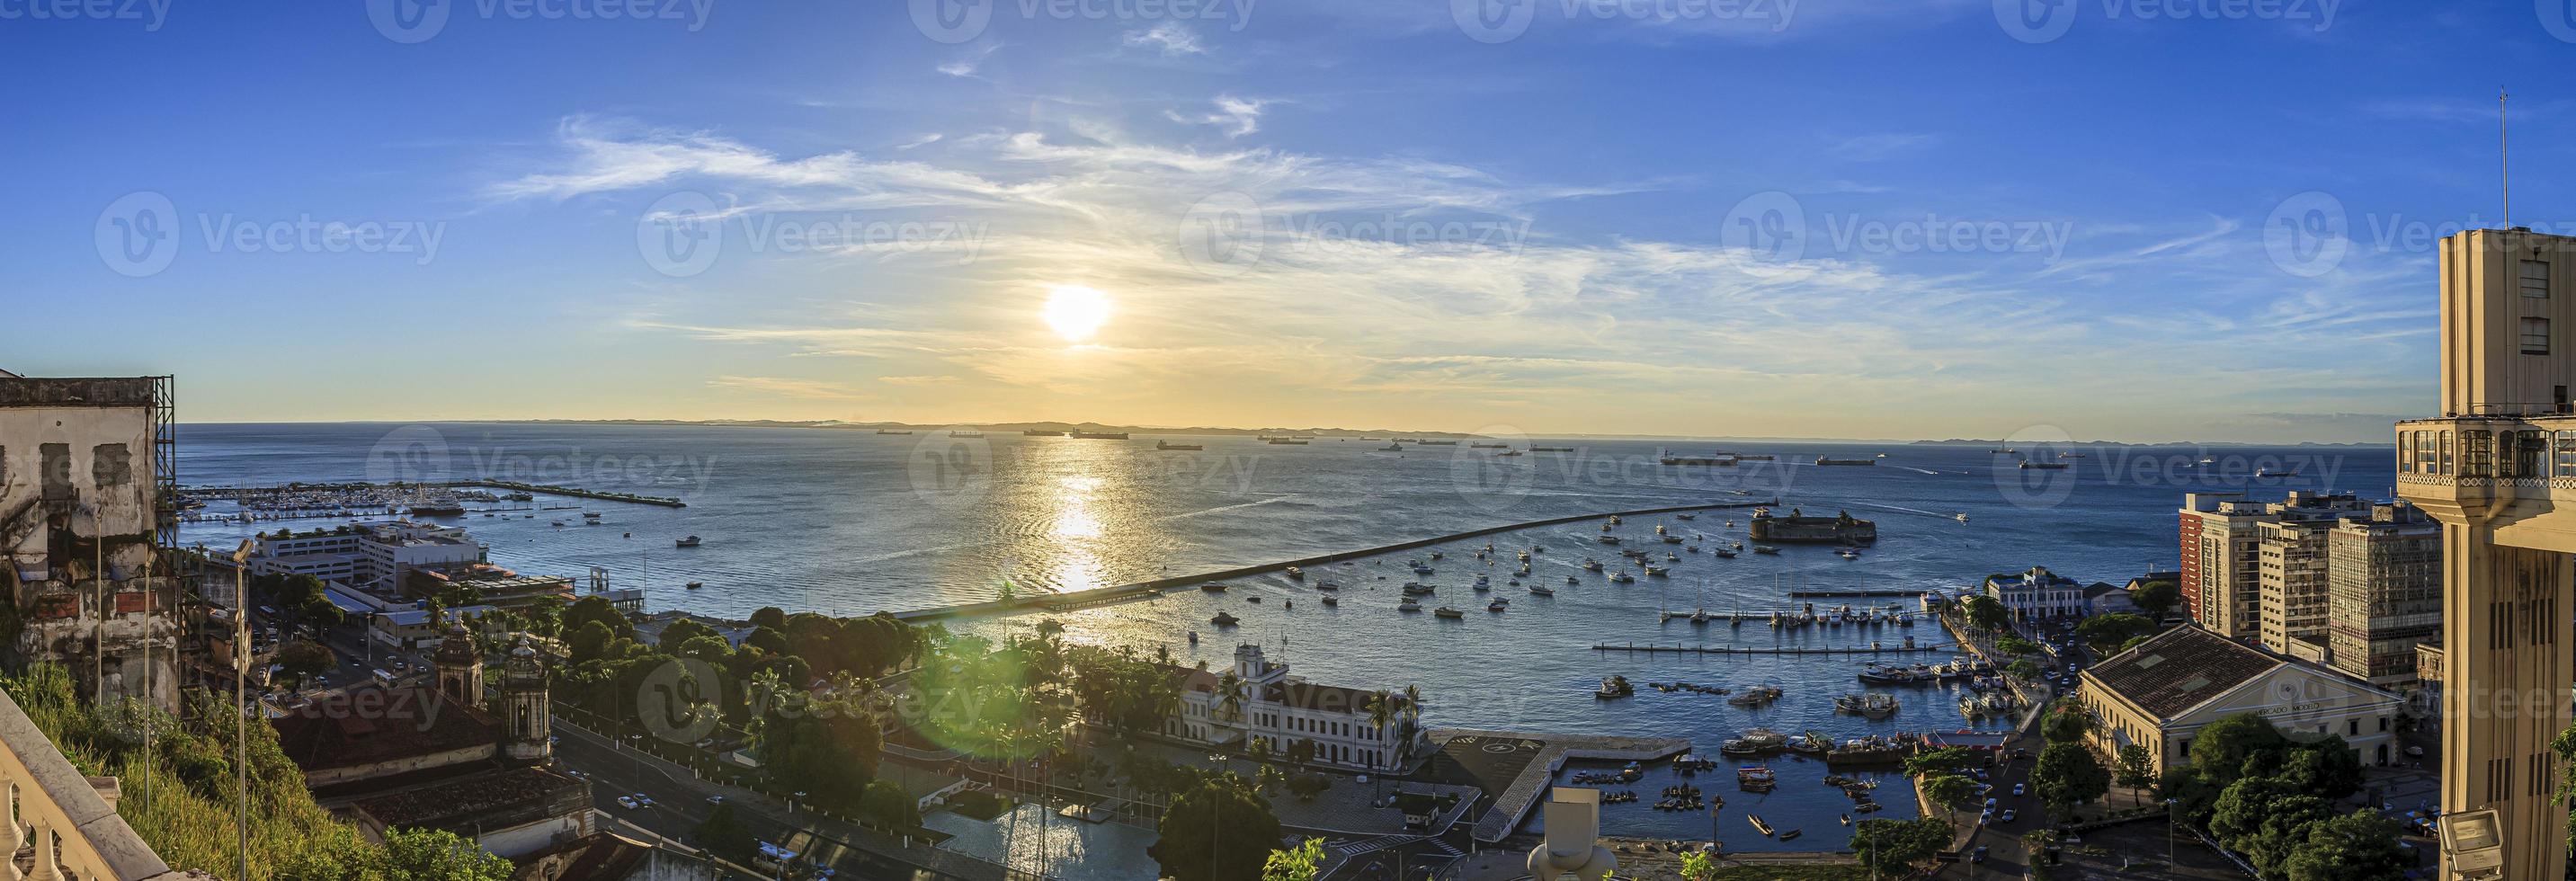 image panoramique du port de la ville brésilienne de salvador de bahia photo